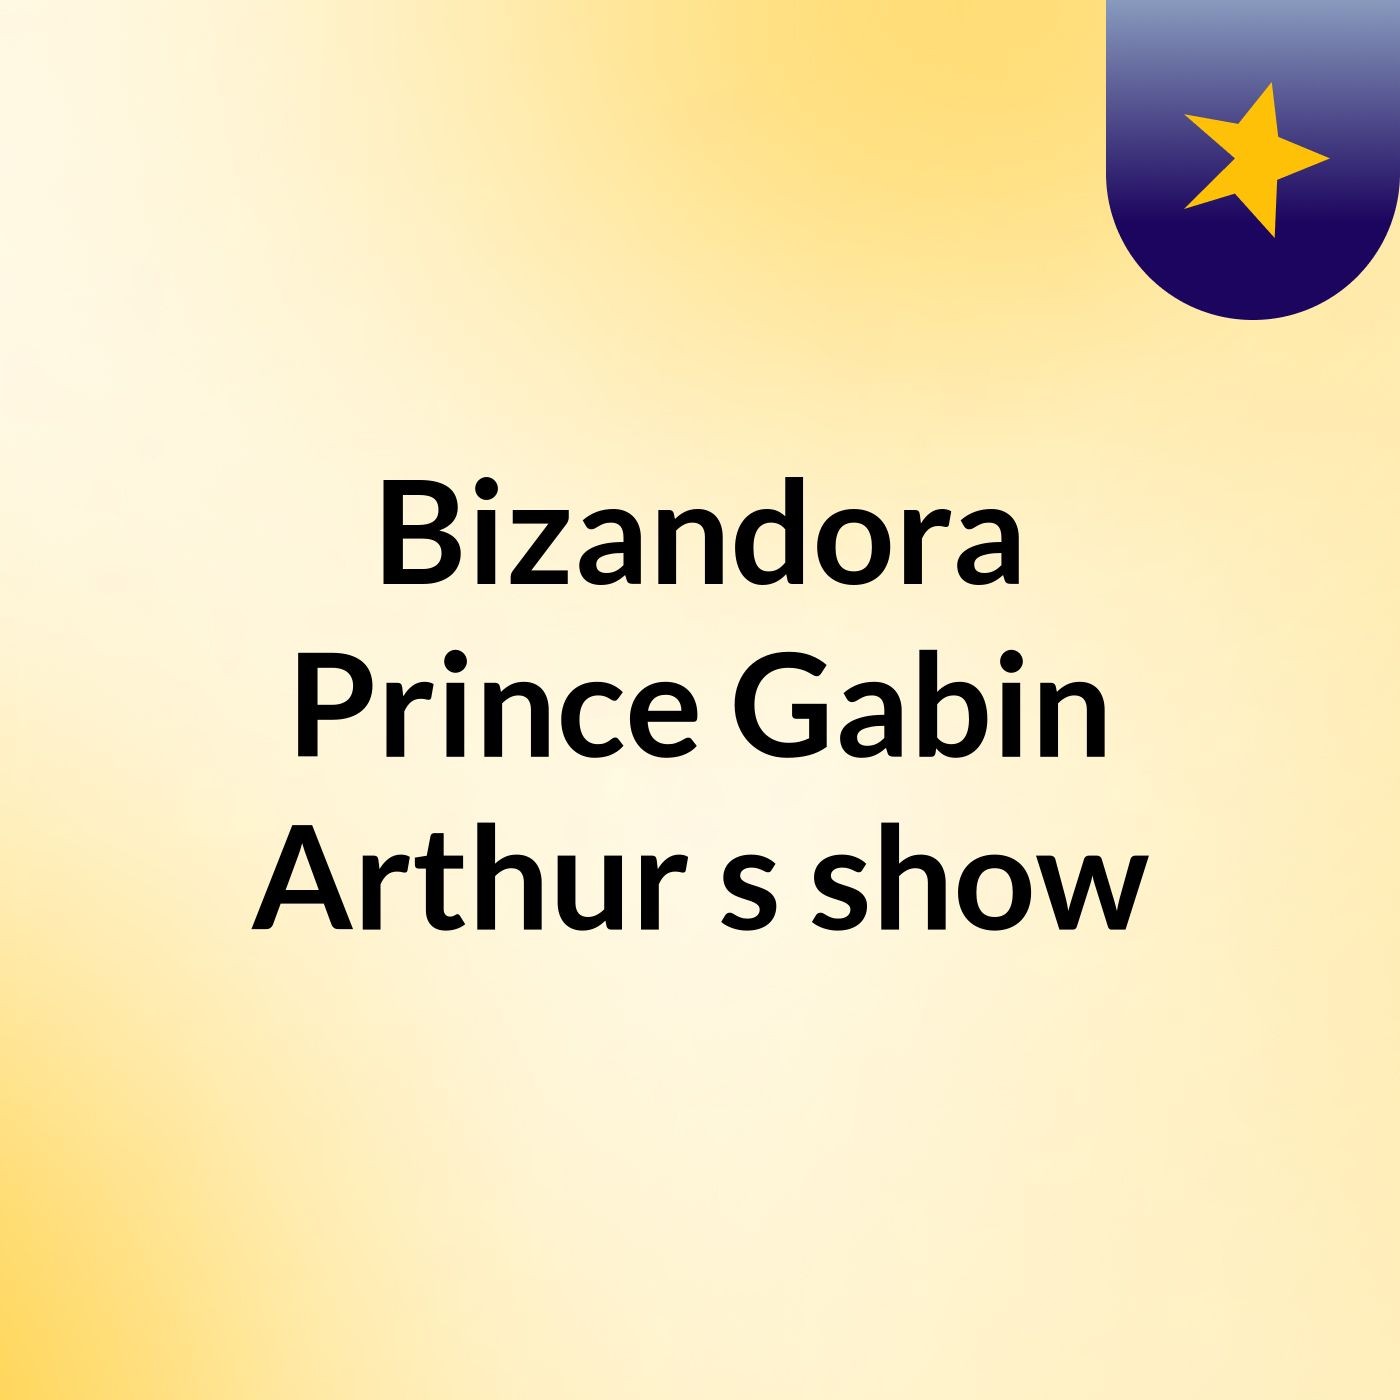 Bizandora Prince Gabin Arthur's show